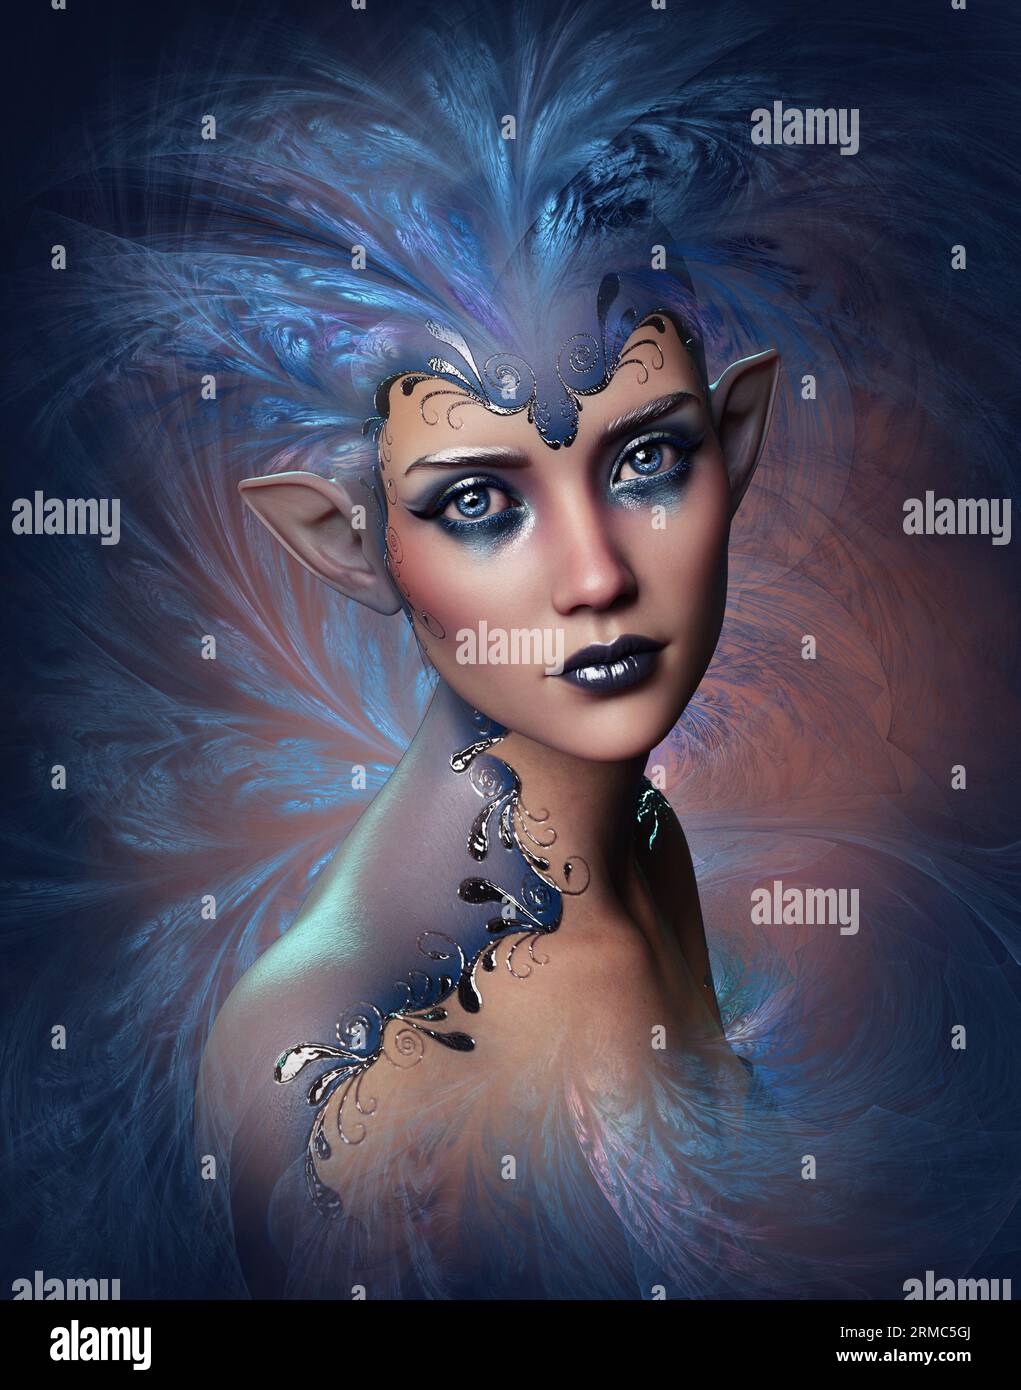 infographie 3d d'un portrait d'une fée avec maquillage fantastique Banque D'Images